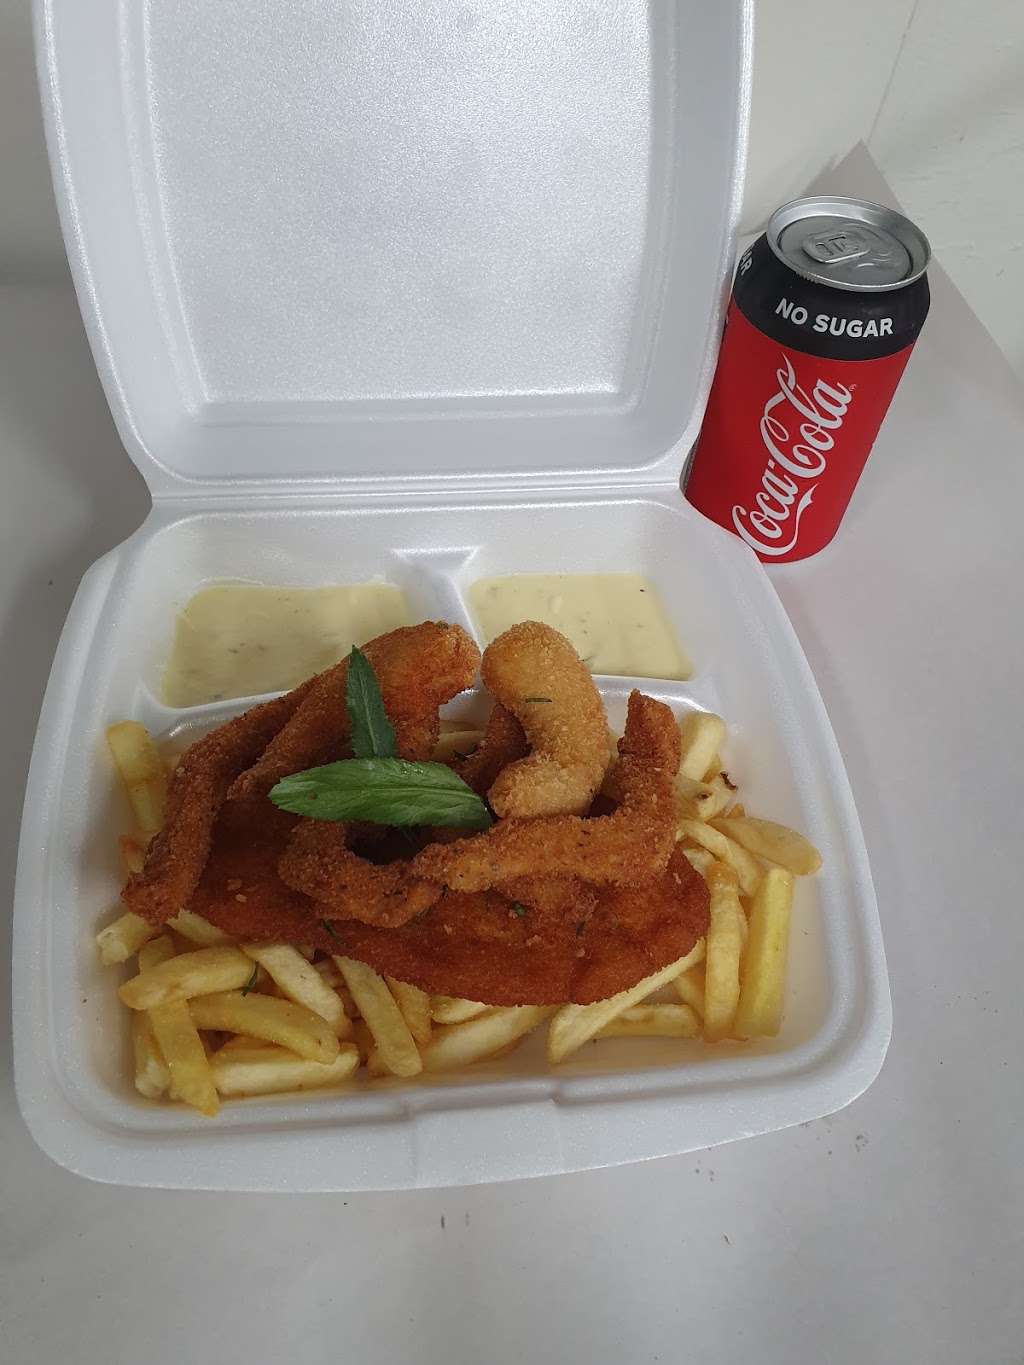 Fresh takeway fish & chips | meal takeaway | 7a/390 Kingston Rd, Slacks Creek QLD 4127, Australia | 0731330325 OR +61 7 3133 0325